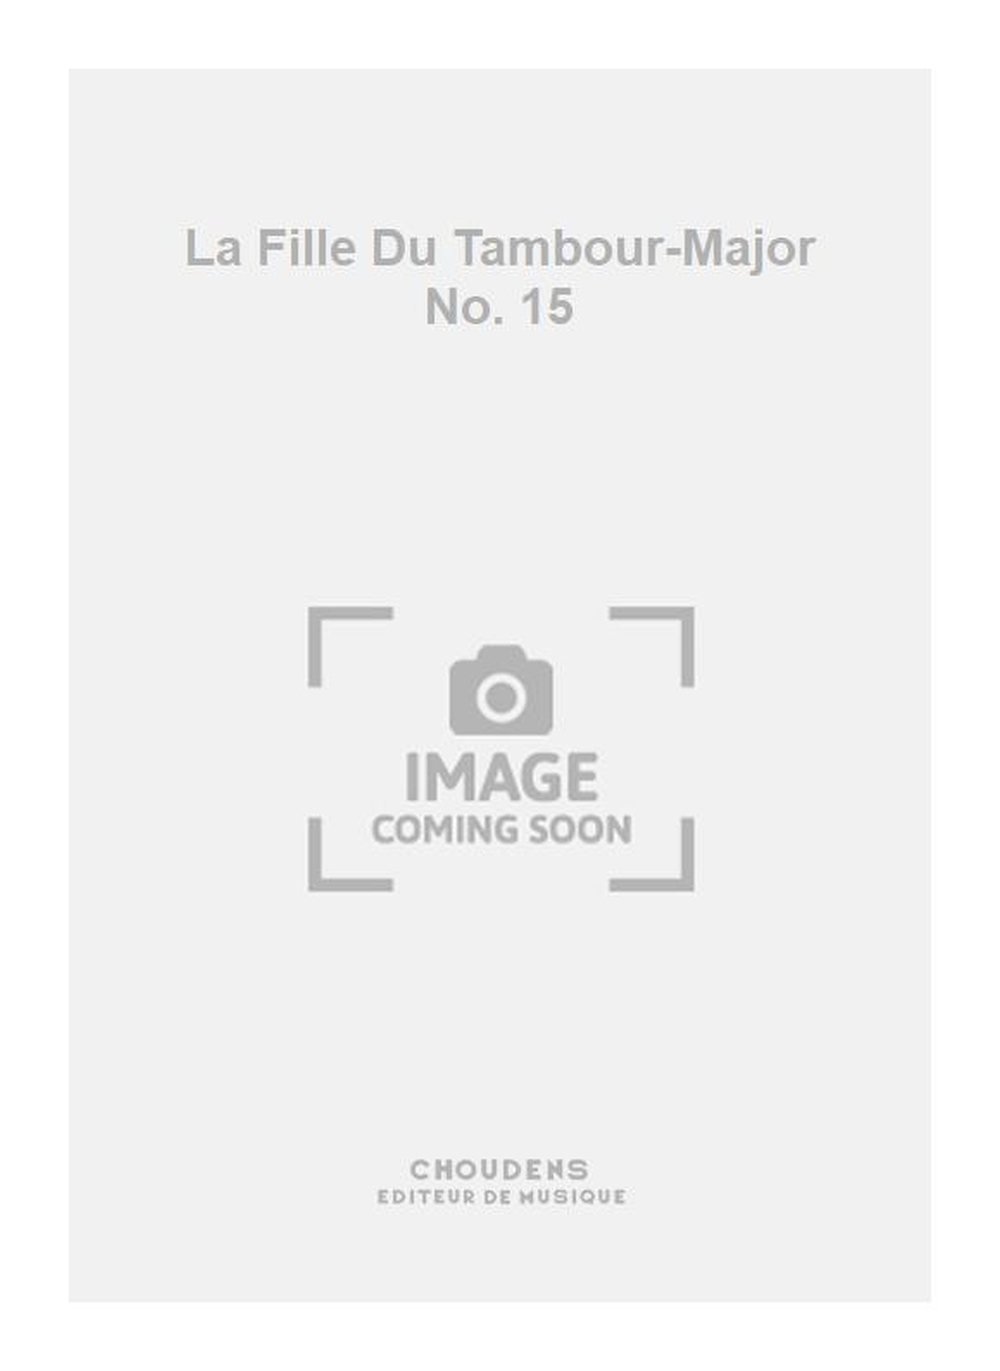 La Fille Du Tambour-Major No. 15